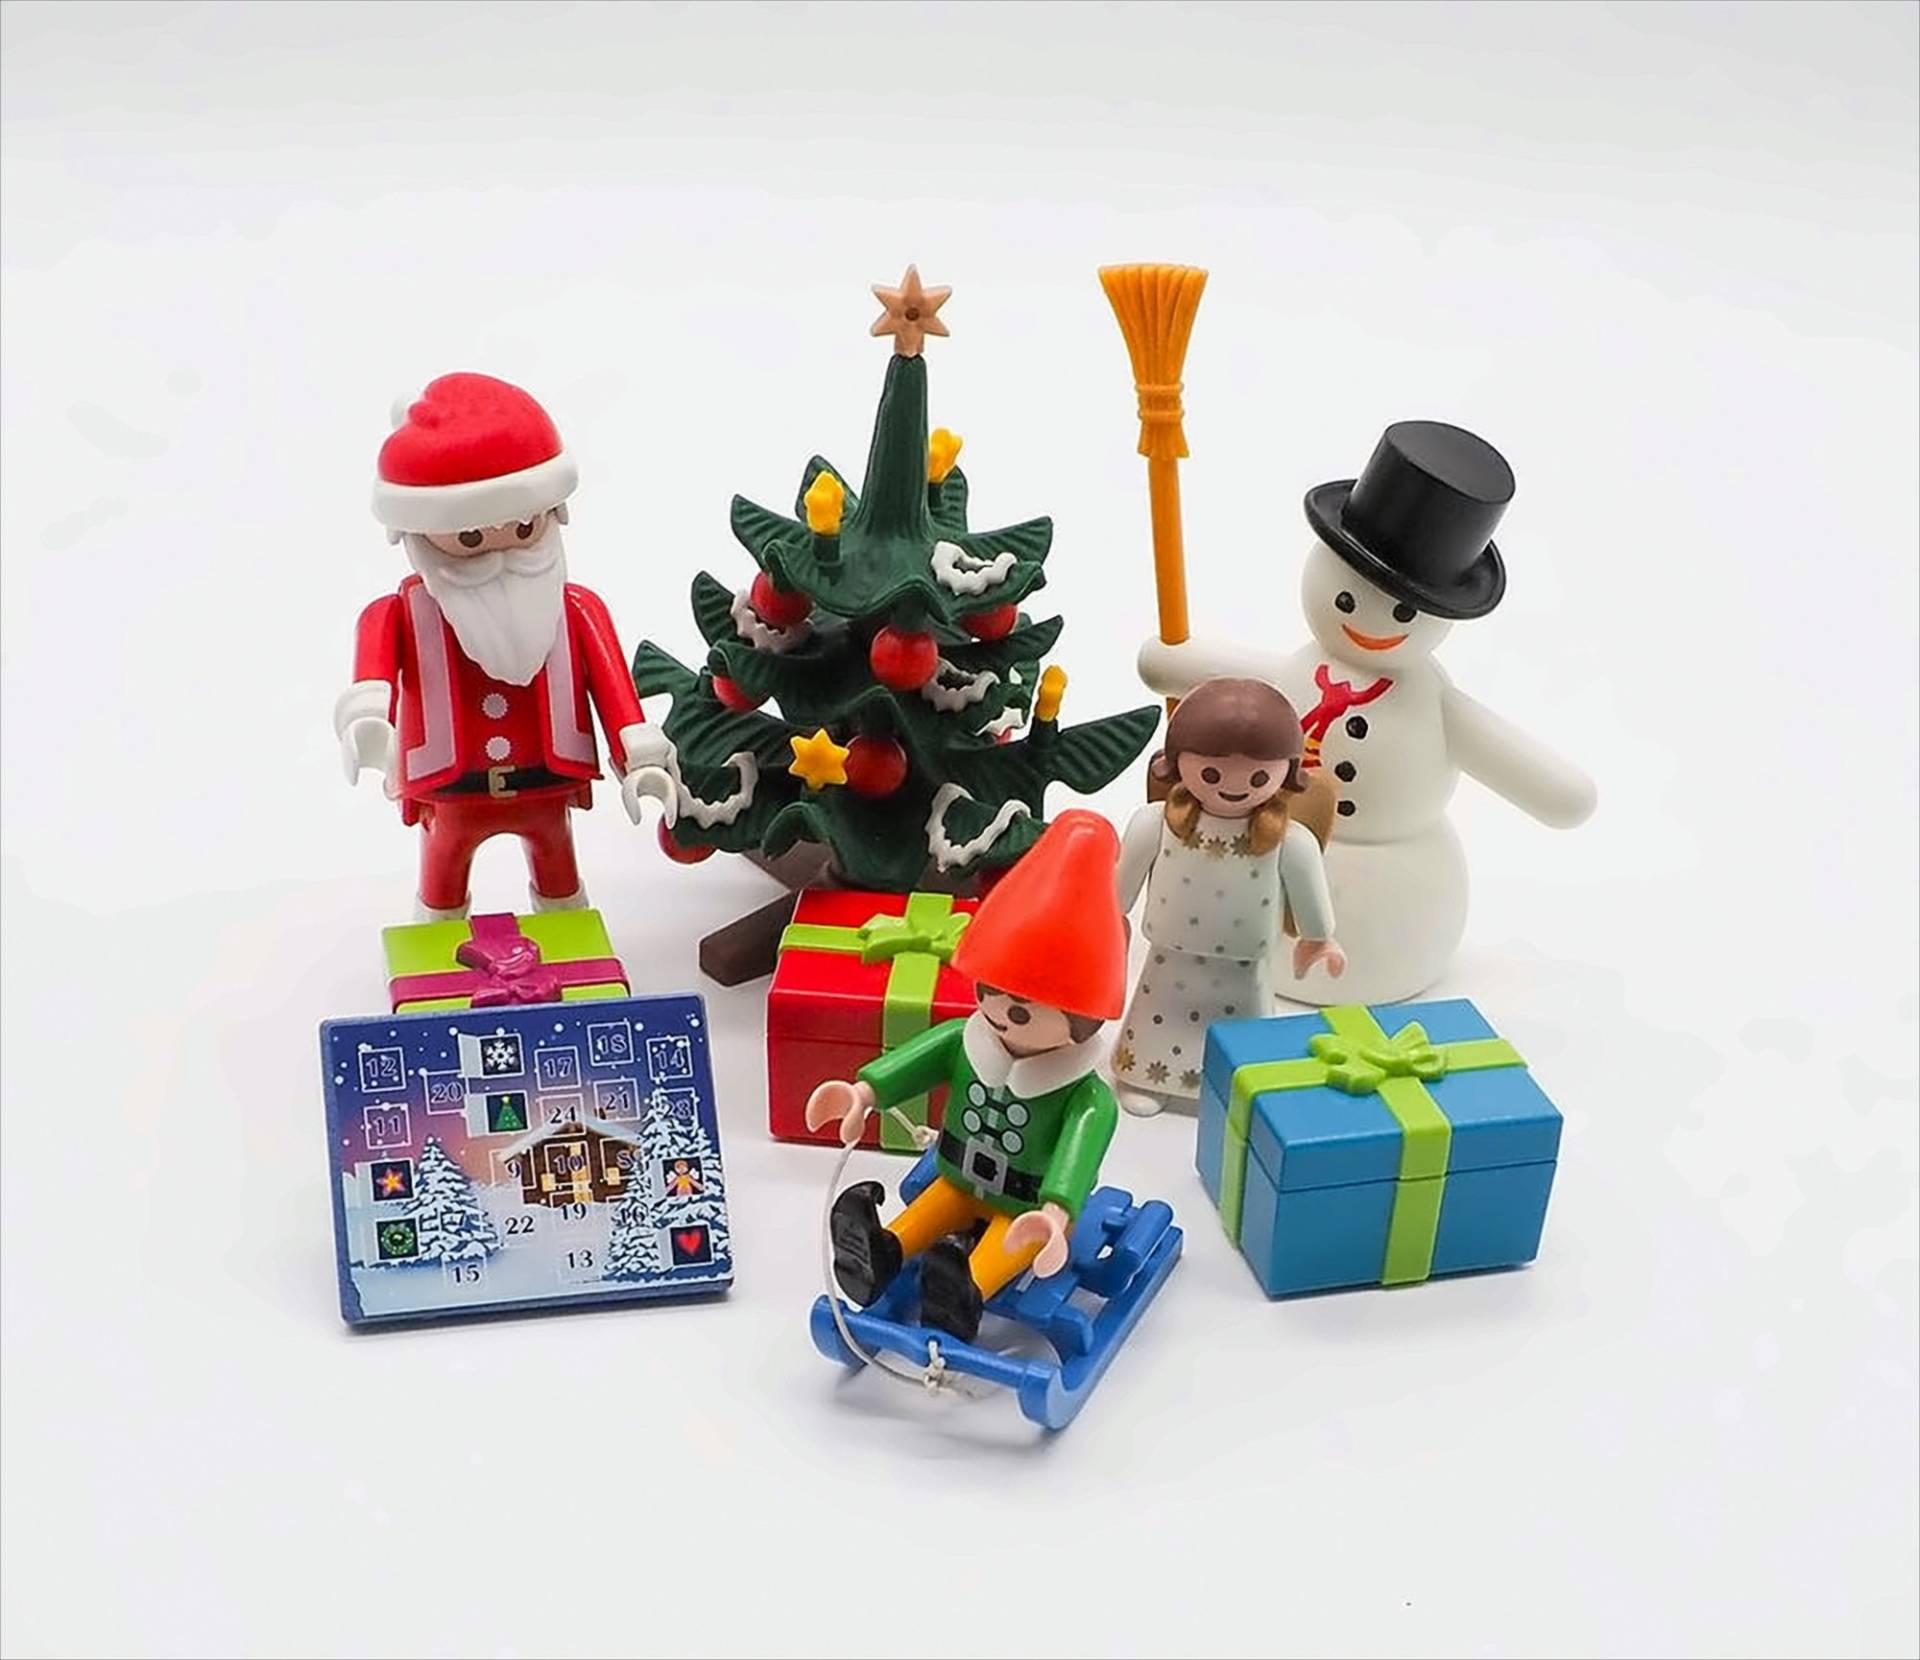 Playmobil Weihnachtsset von geobra Brandstätter Stiftung & Co. KG